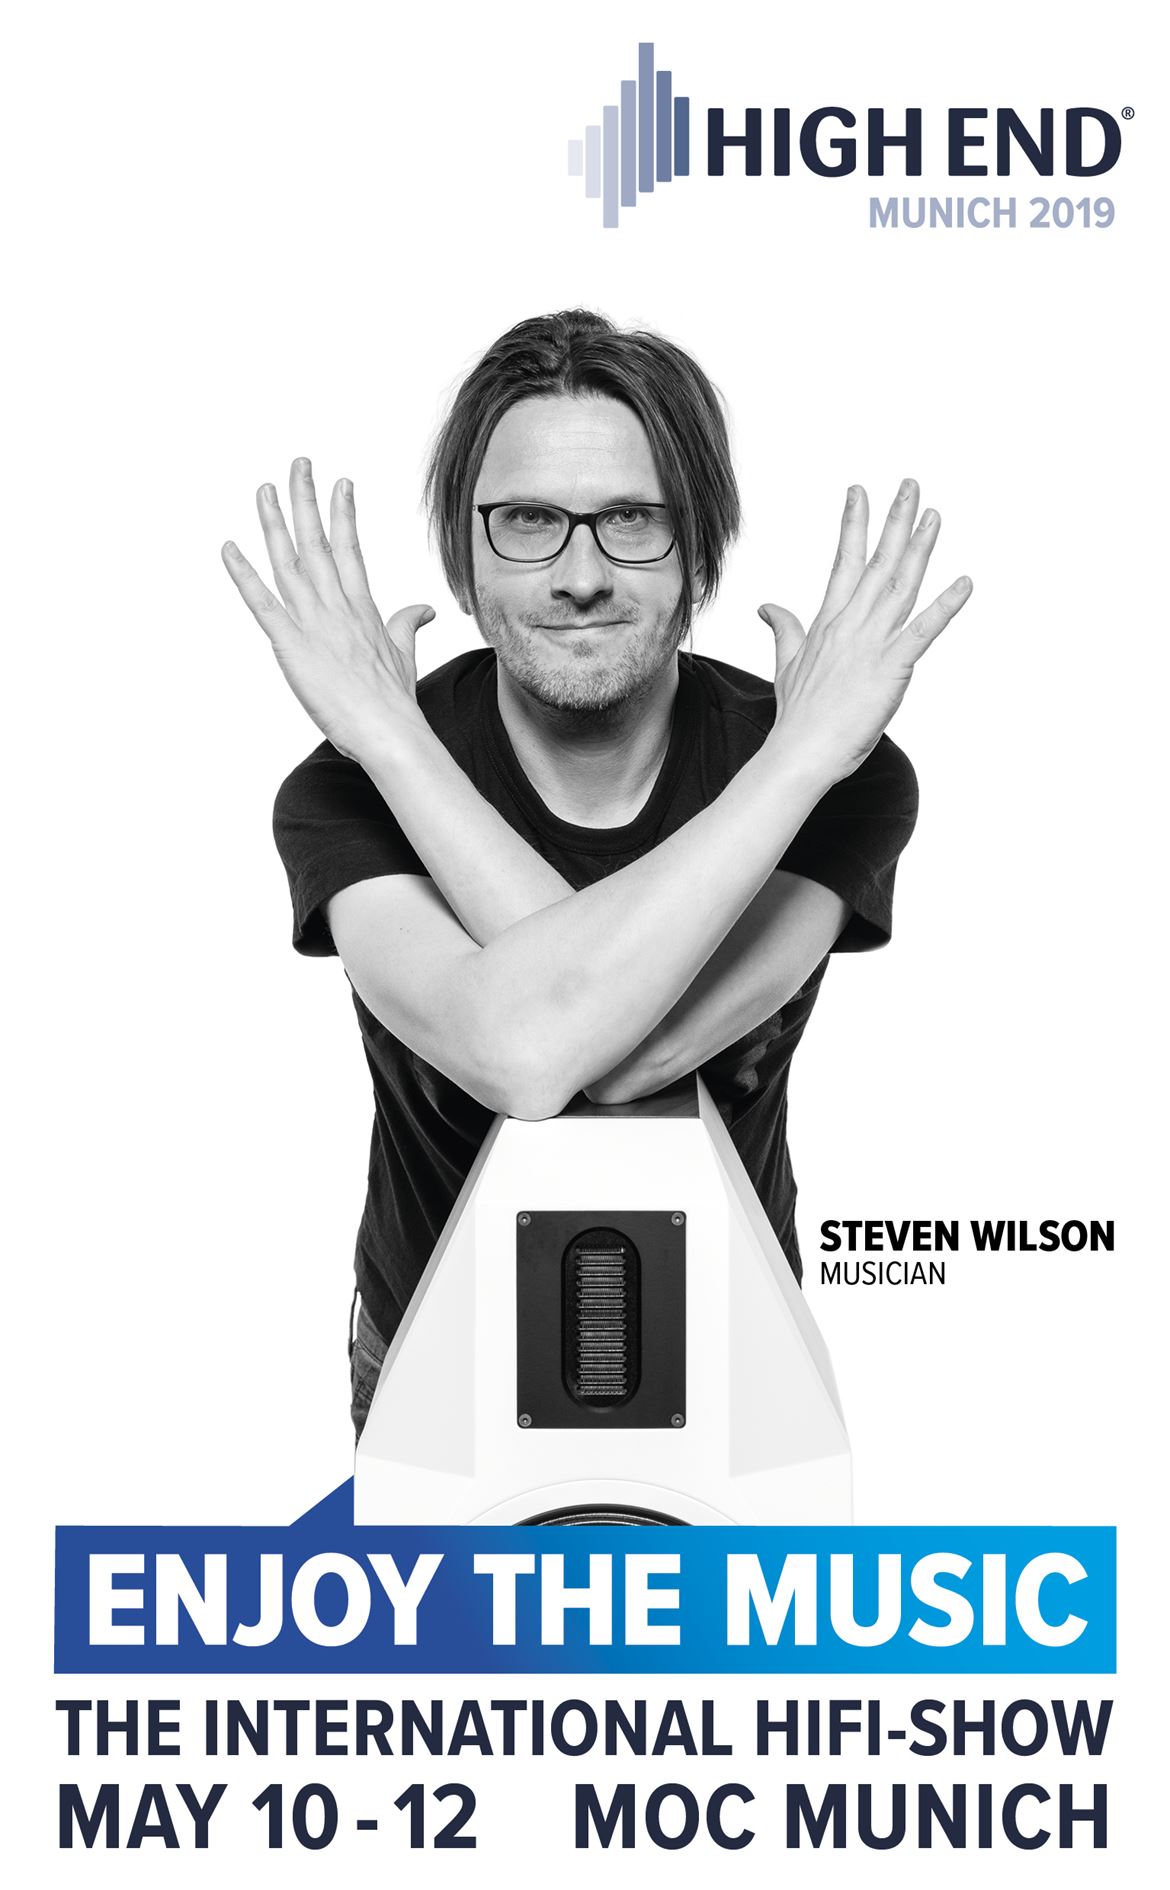 Capa do catálogo geral do HIGH END 2019, com Steven Wilson na capa.